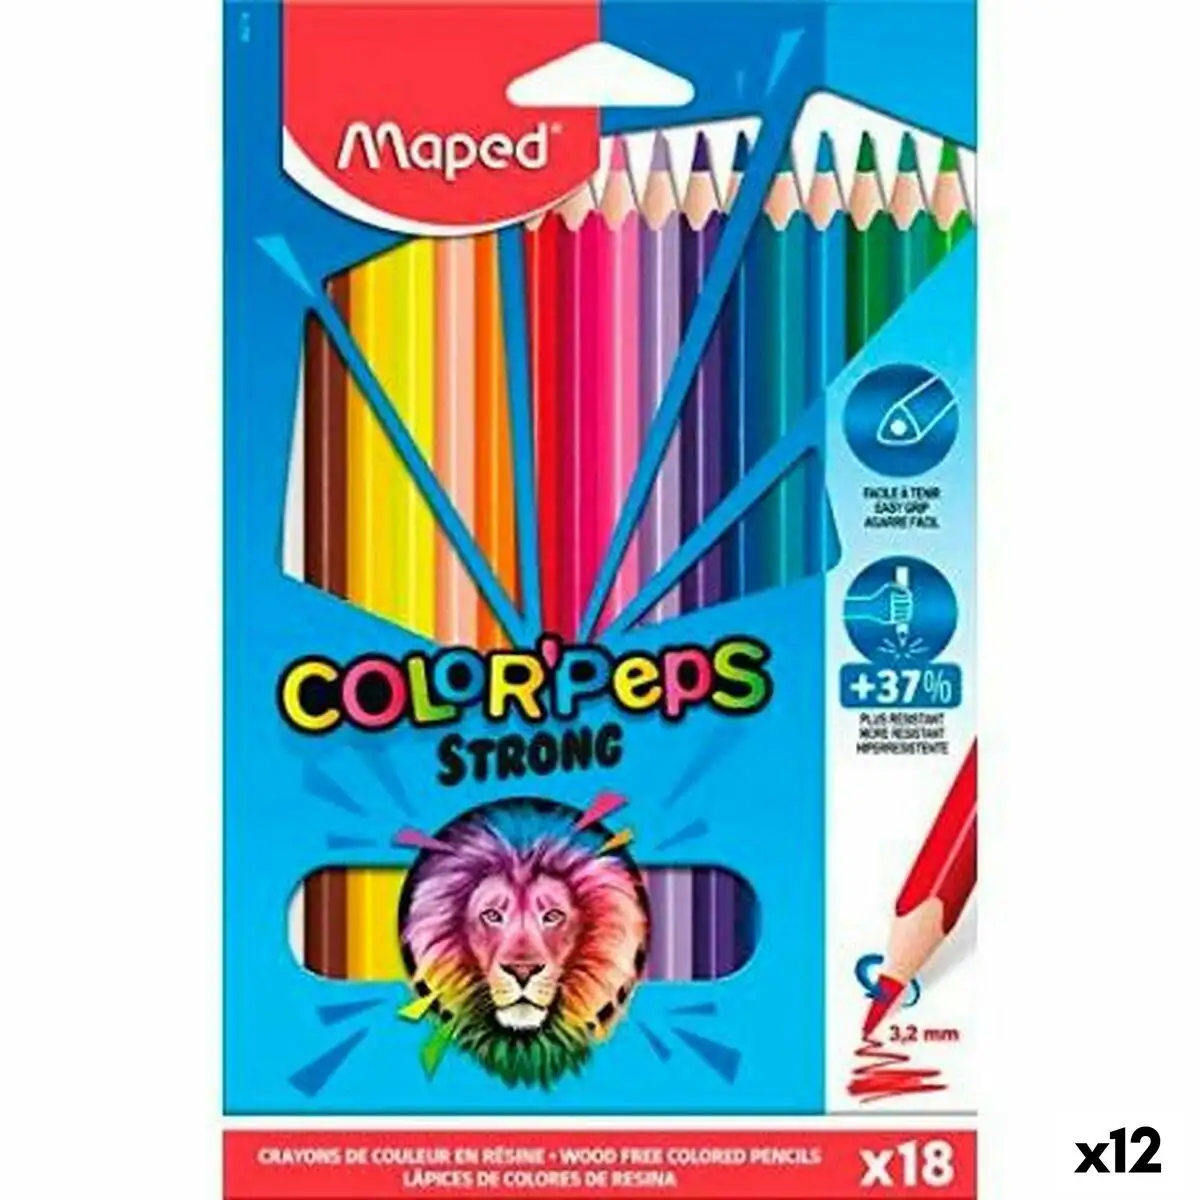 Crayons de couleur maped color peps strong multicouleur 18 pieces 12 unites _9215. Bienvenue chez DIAYTAR SENEGAL - Où le Shopping Devient un Plaisir. Découvrez notre boutique en ligne et trouvez des trésors qui égaieront chaque jour de votre vie.